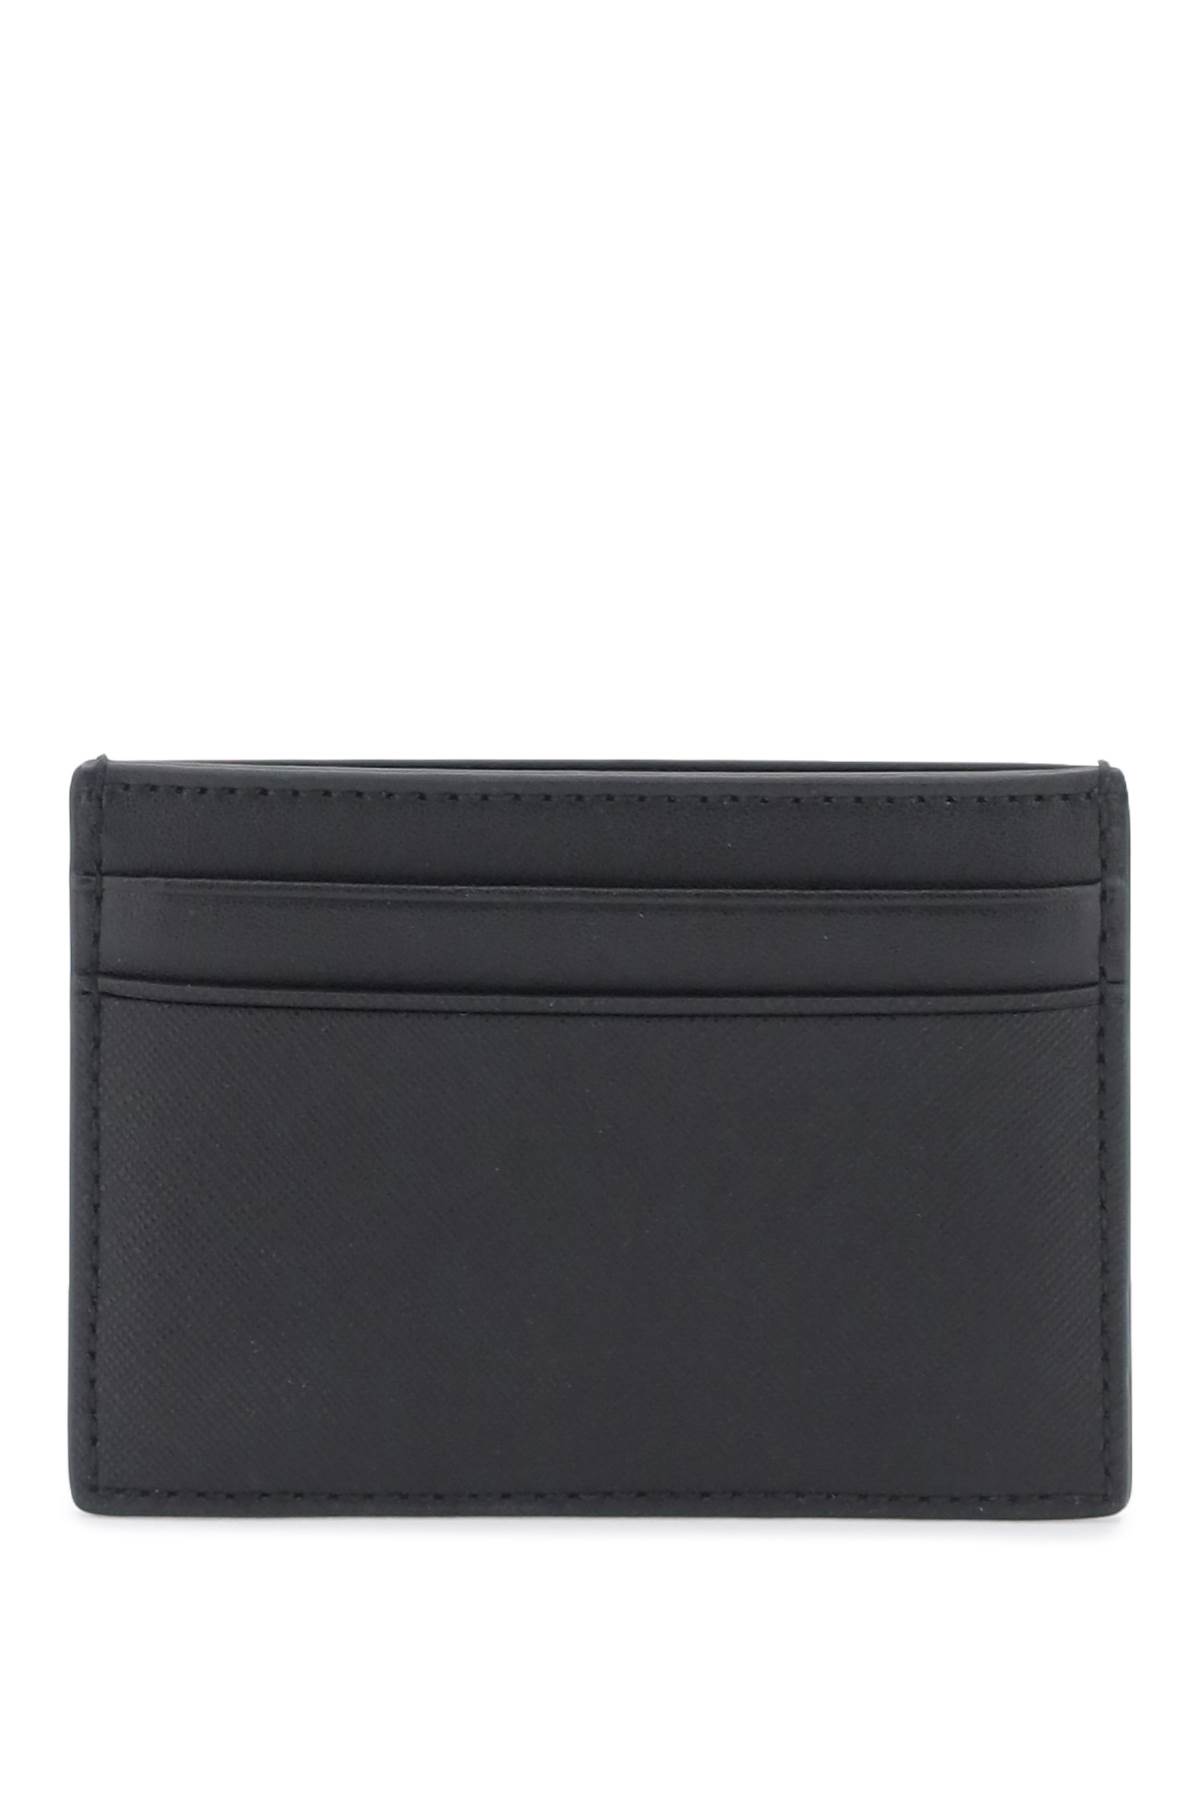 Shop Bally Leather Bhar Cardholder In Black (black)